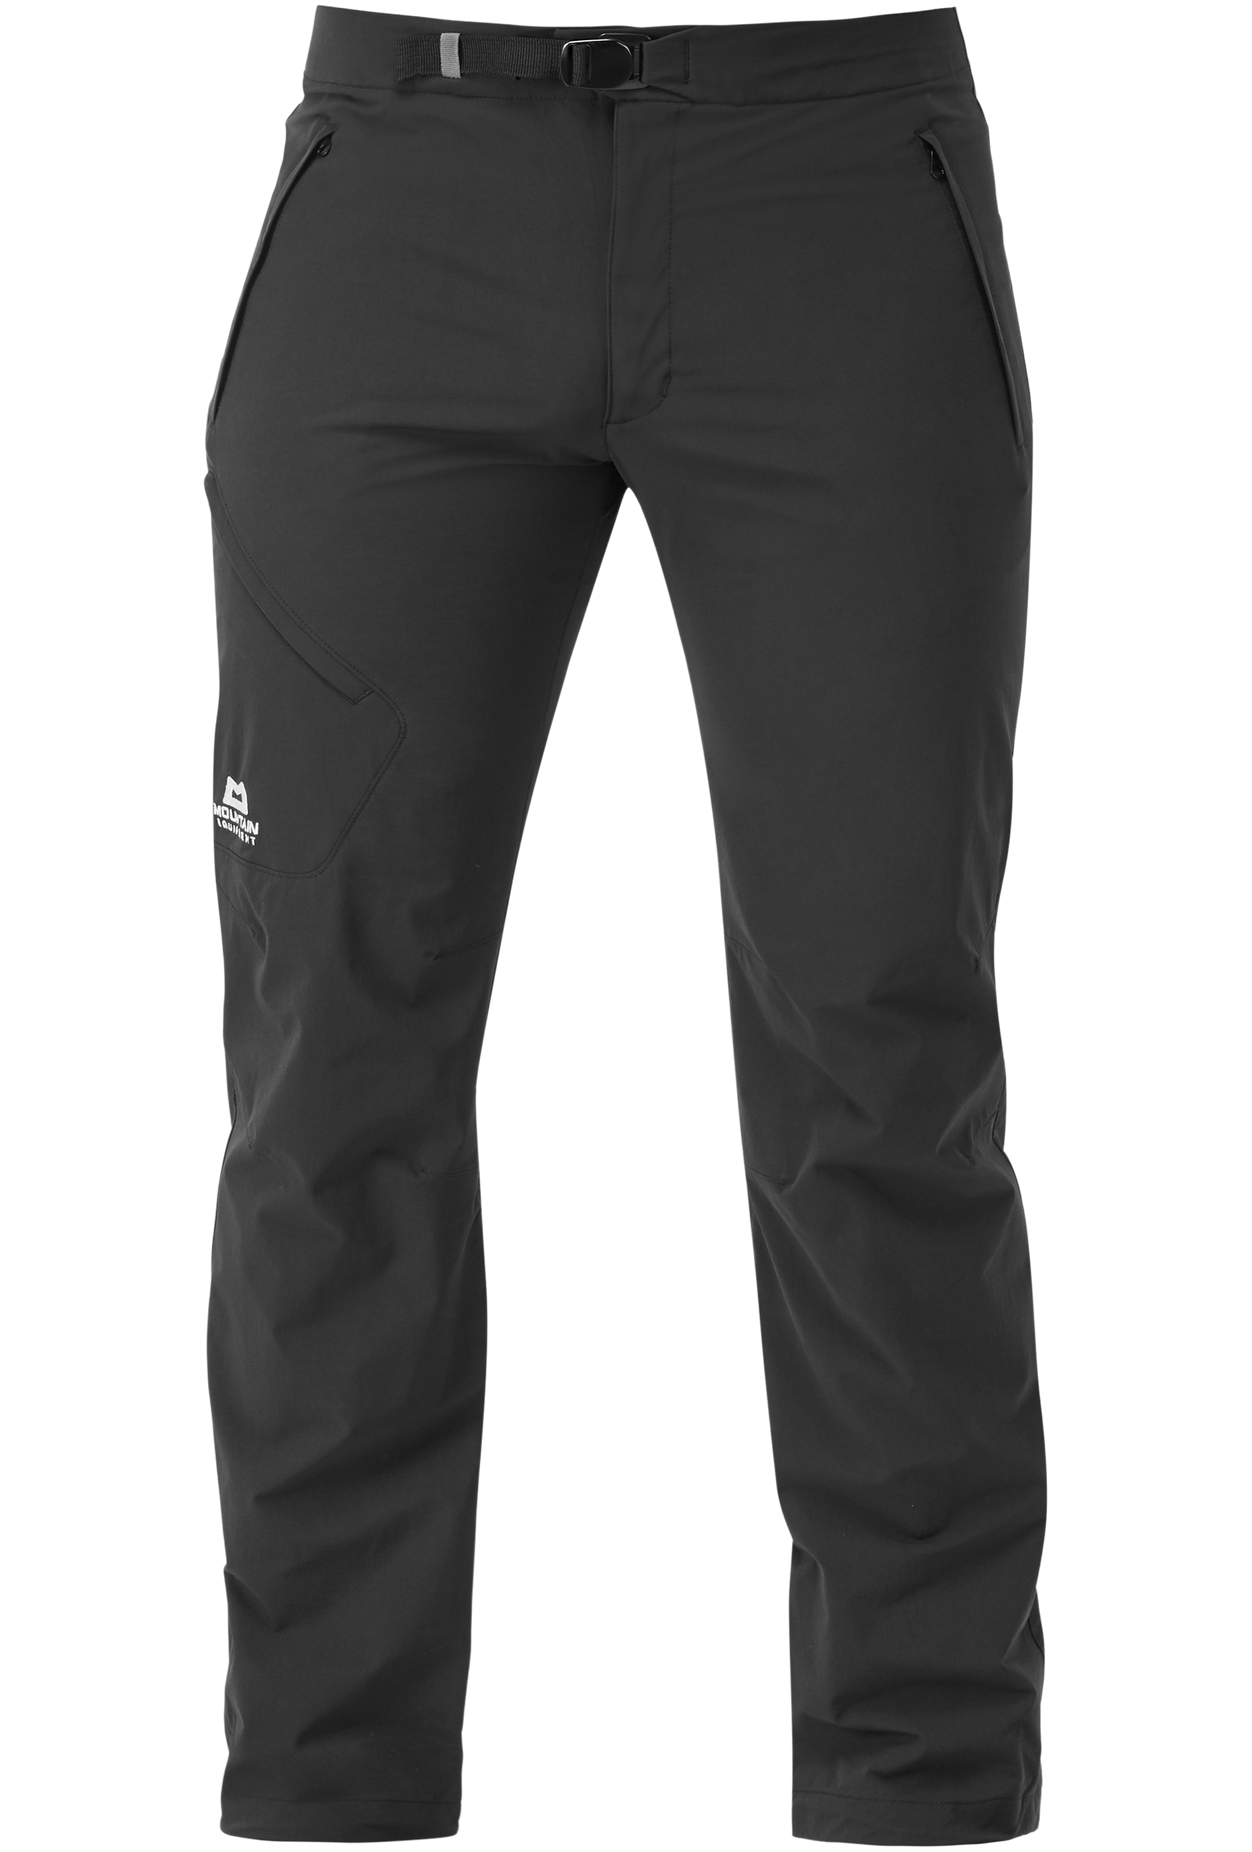 Mountain Equipment pánské softshellové kalhoty Comici Pant - prodloužené Barva: black/black, Velikost: 34/L